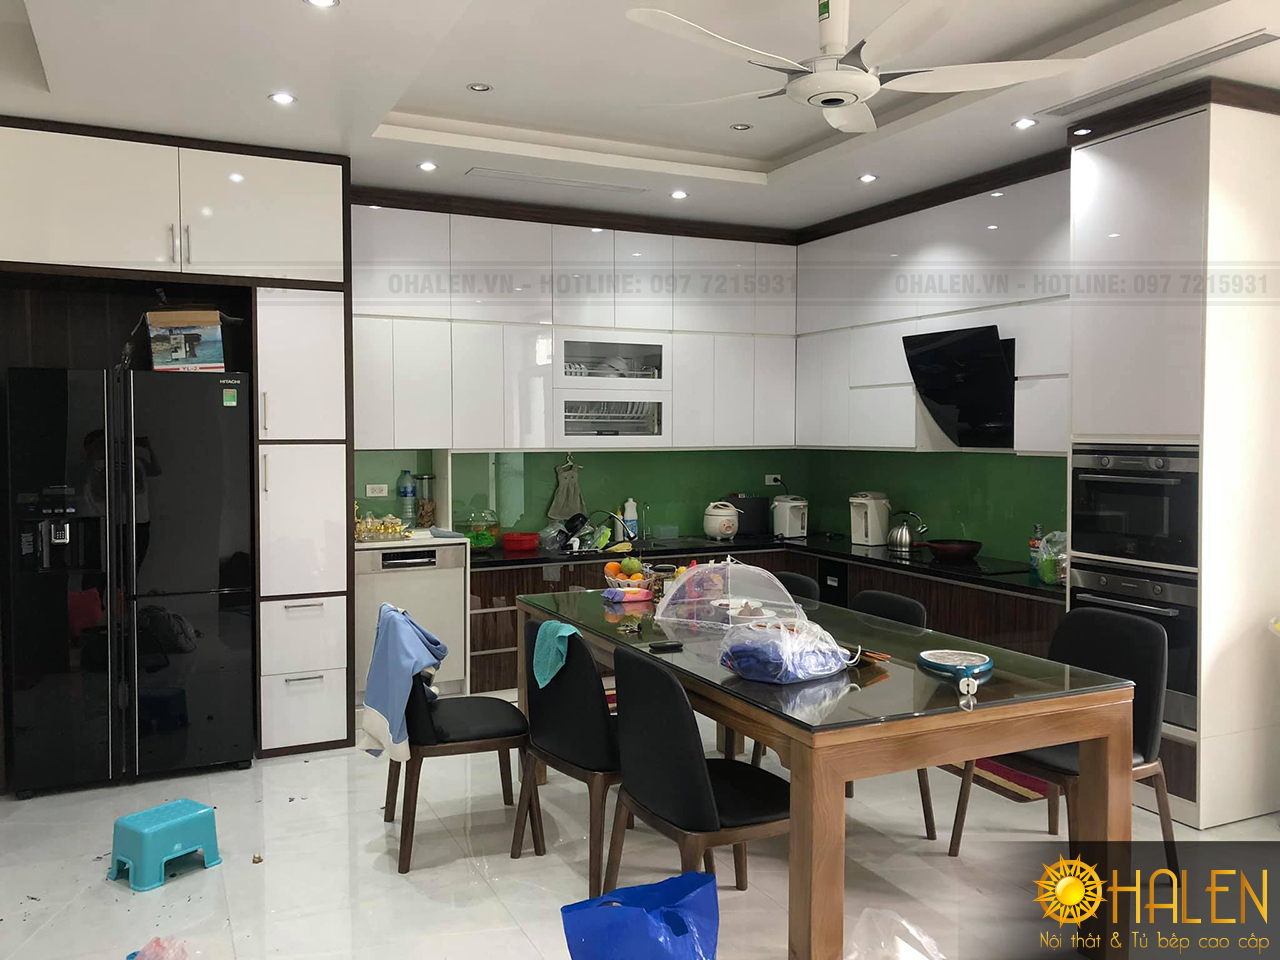 Mẫu tủ bếp kịch trần hoàn thiện cho không gian bếp gia đình anh Tuân tại Vĩnh Phúc